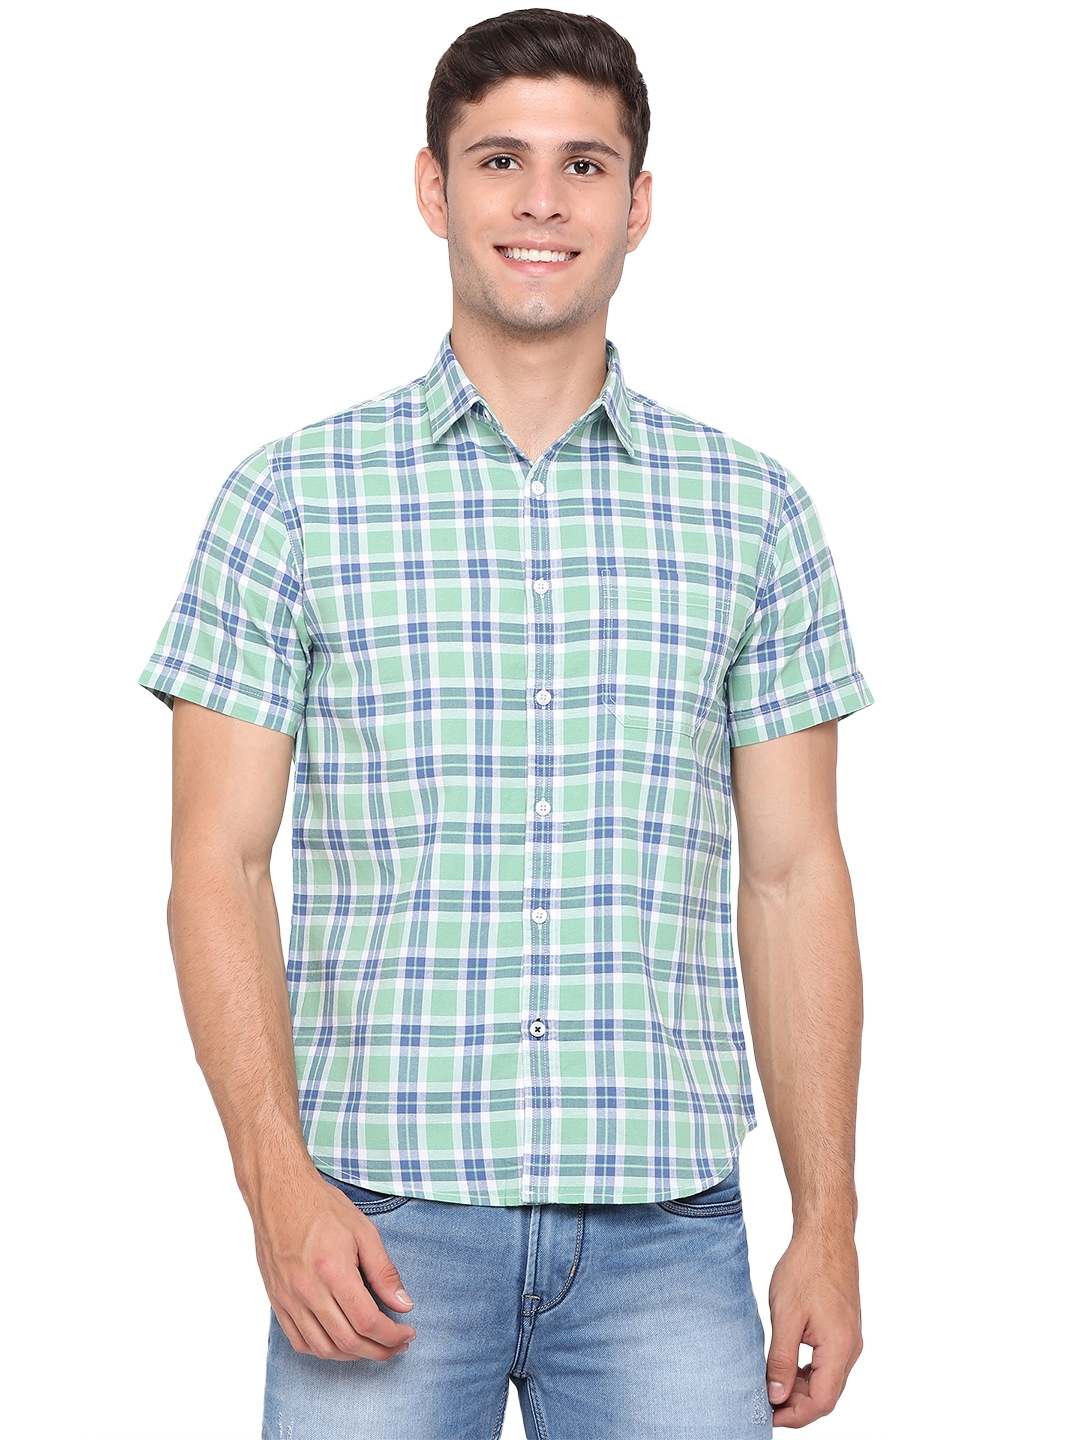 Greenfibre | Fair Green Checked Casual Shirts (GFS-CH-602B FAIR GREEN)